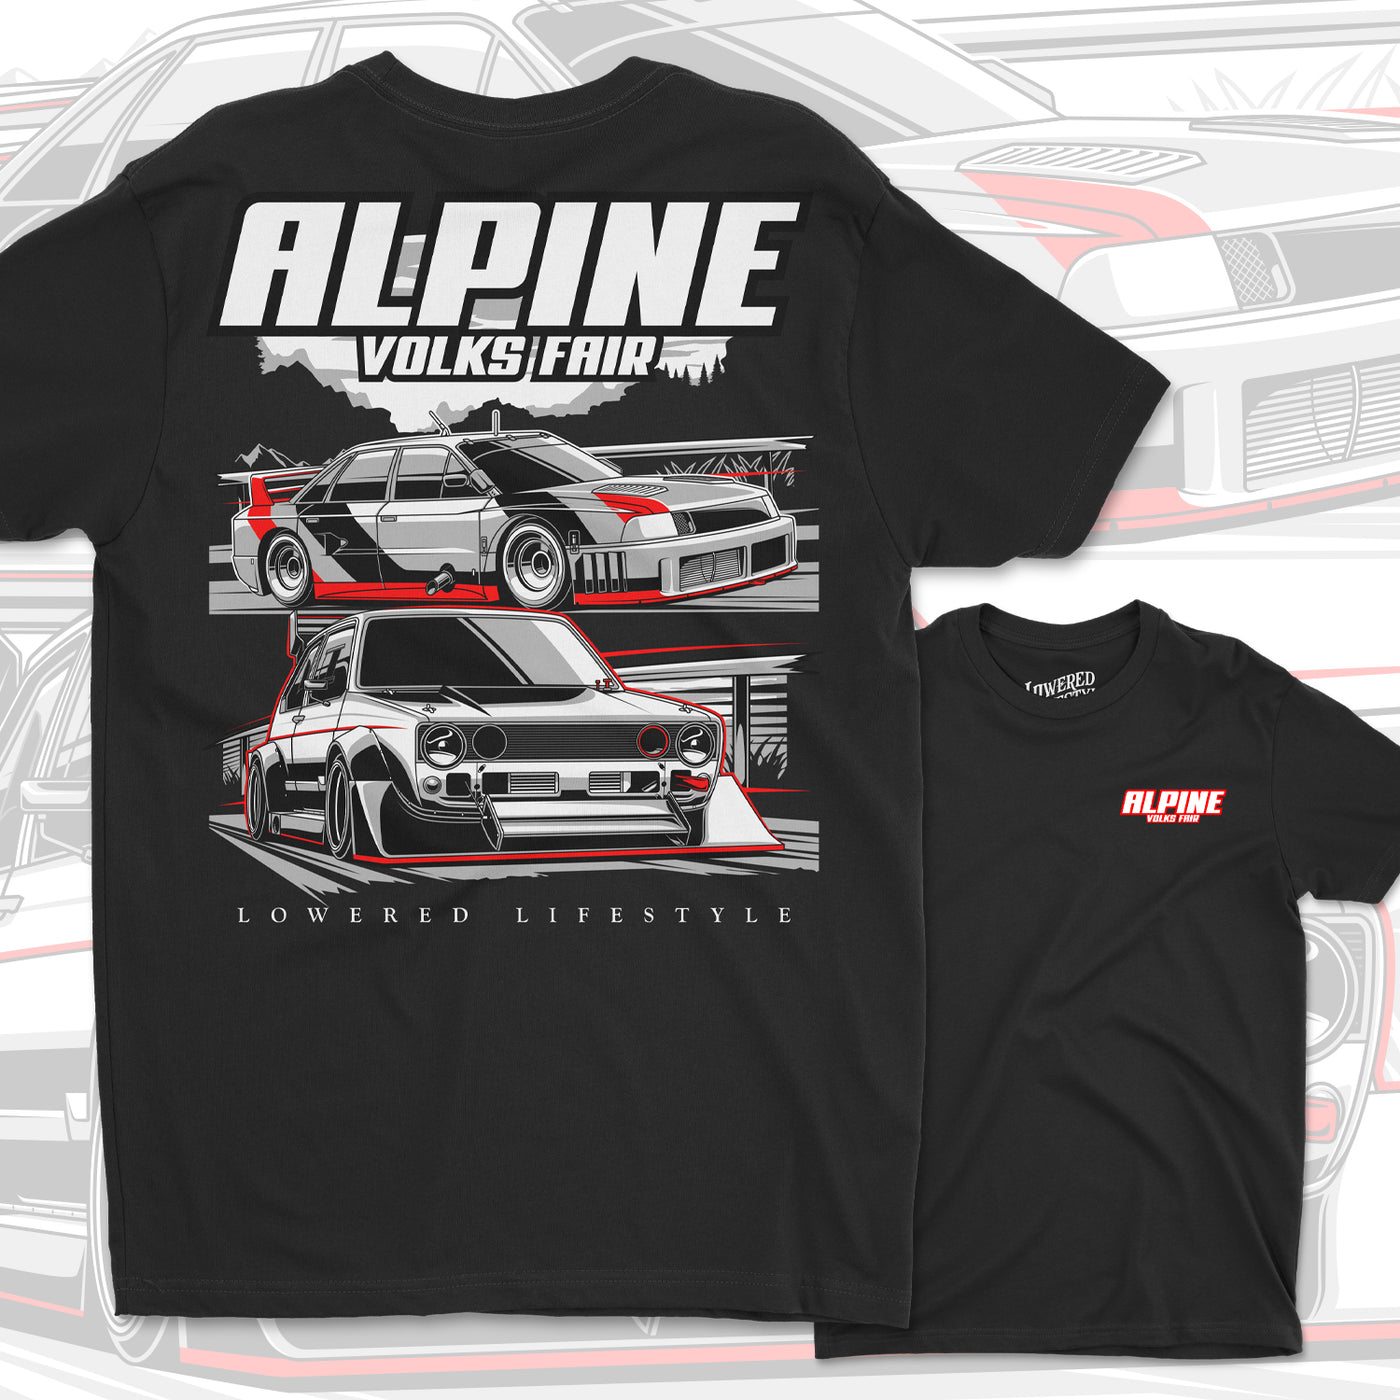 Alpine Volks Fair Shirt + Sticker Bundle (PREORDER)